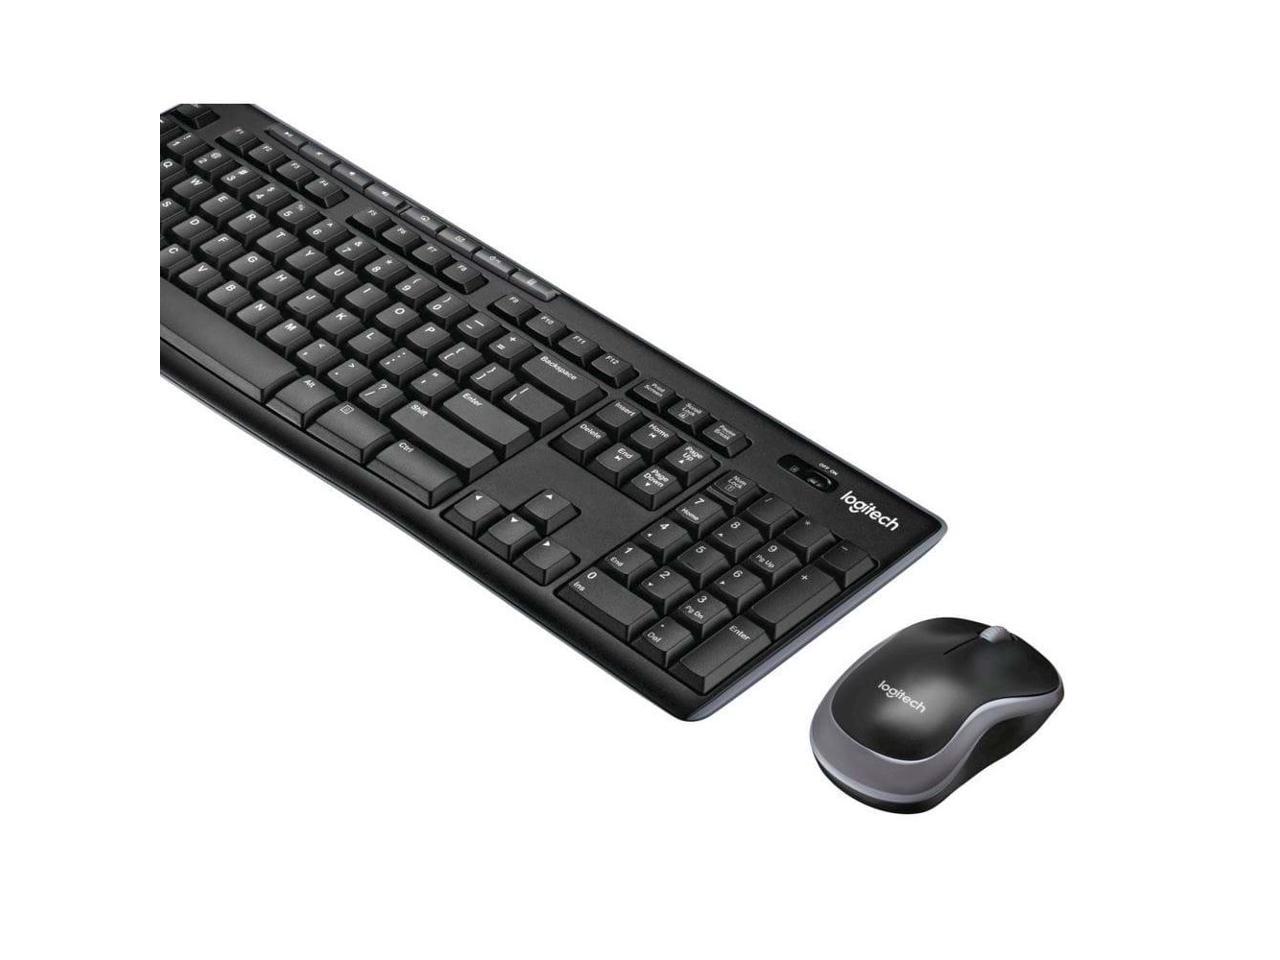 Black 920-008002 Logitech MK530 Wireless USB Keyboard & Laser Mouse Combo 